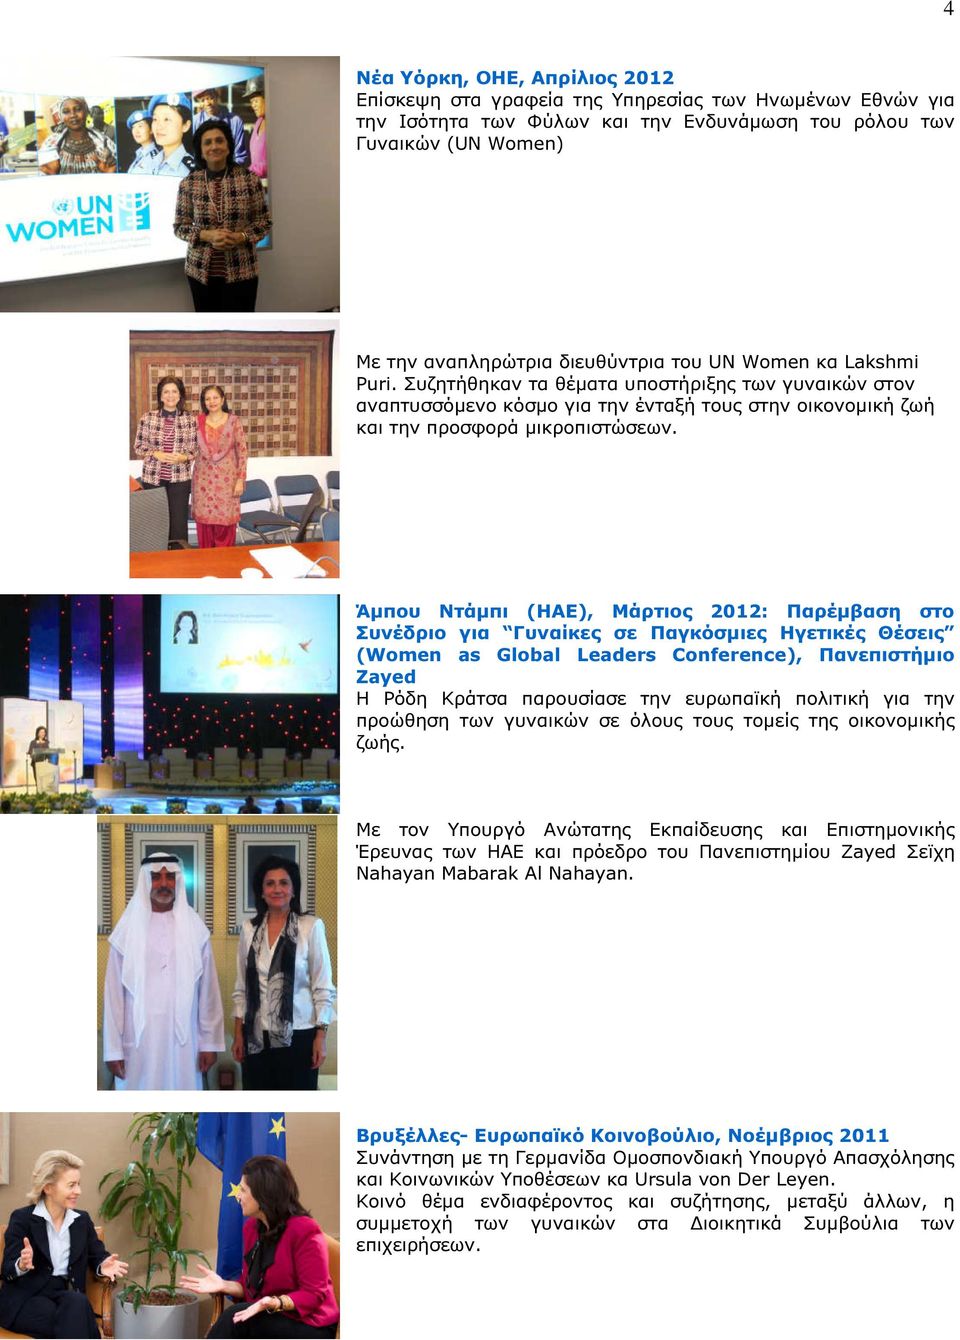 Άµπου Ντάµπι (ΗΑΕ), Μάρτιος 2012: Παρέµβαση στο Συνέδριο για Γυναίκες σε Παγκόσµιες Ηγετικές Θέσεις (Women as Global Leaders Conference), Πανεπιστήµιο Zayed Η Ρόδη Κράτσα παρουσίασε την ευρωπαϊκή